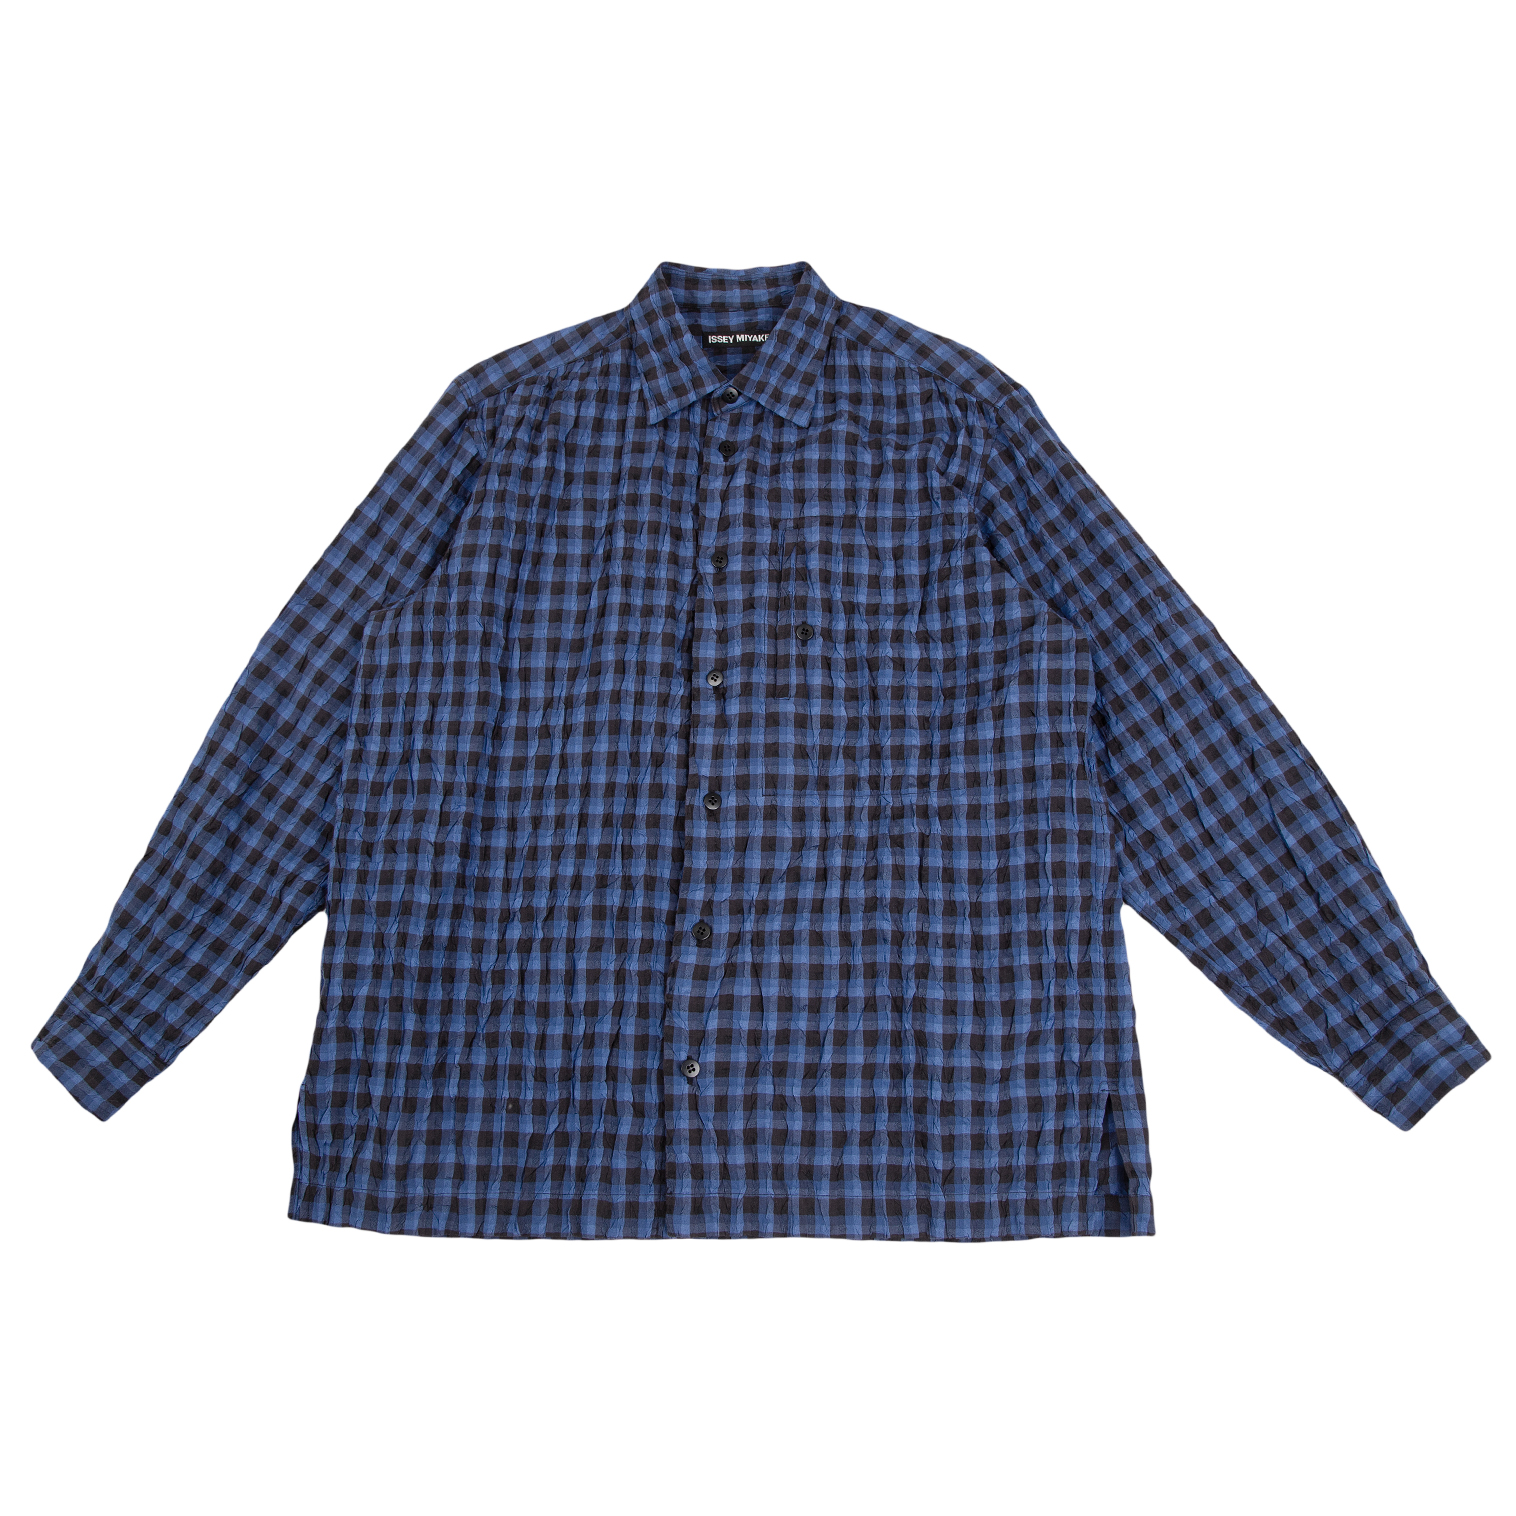 Issey Miyake チェックシャツ袖丈…53cm - シャツ